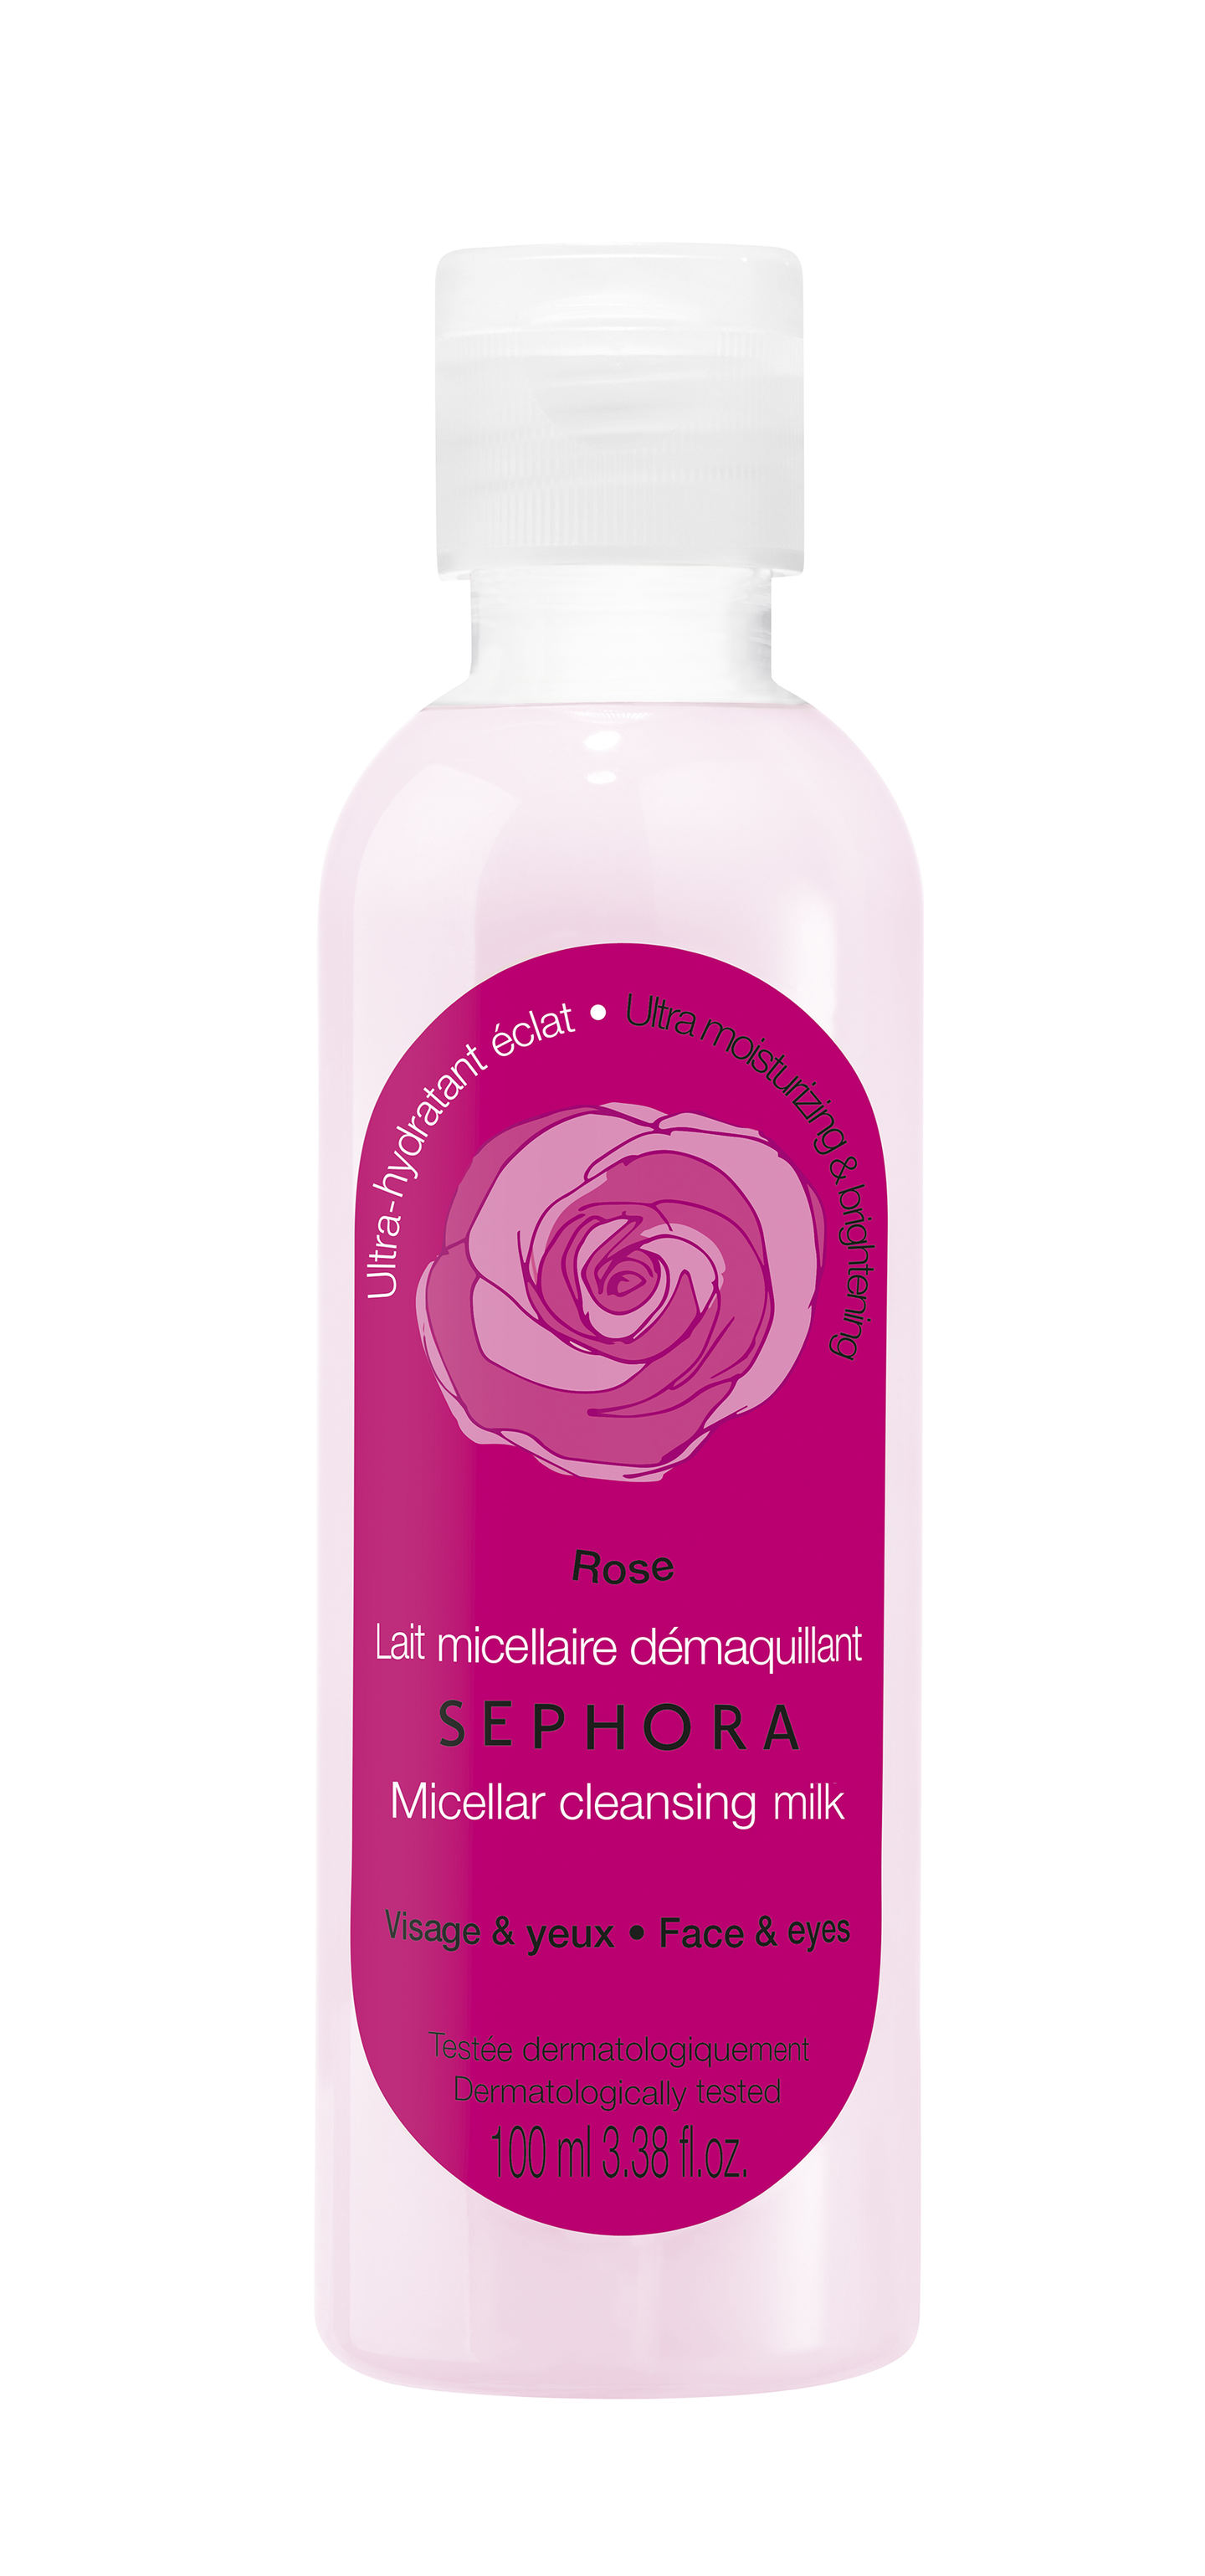 Micellar Cleansing Milk | Made in Sephora